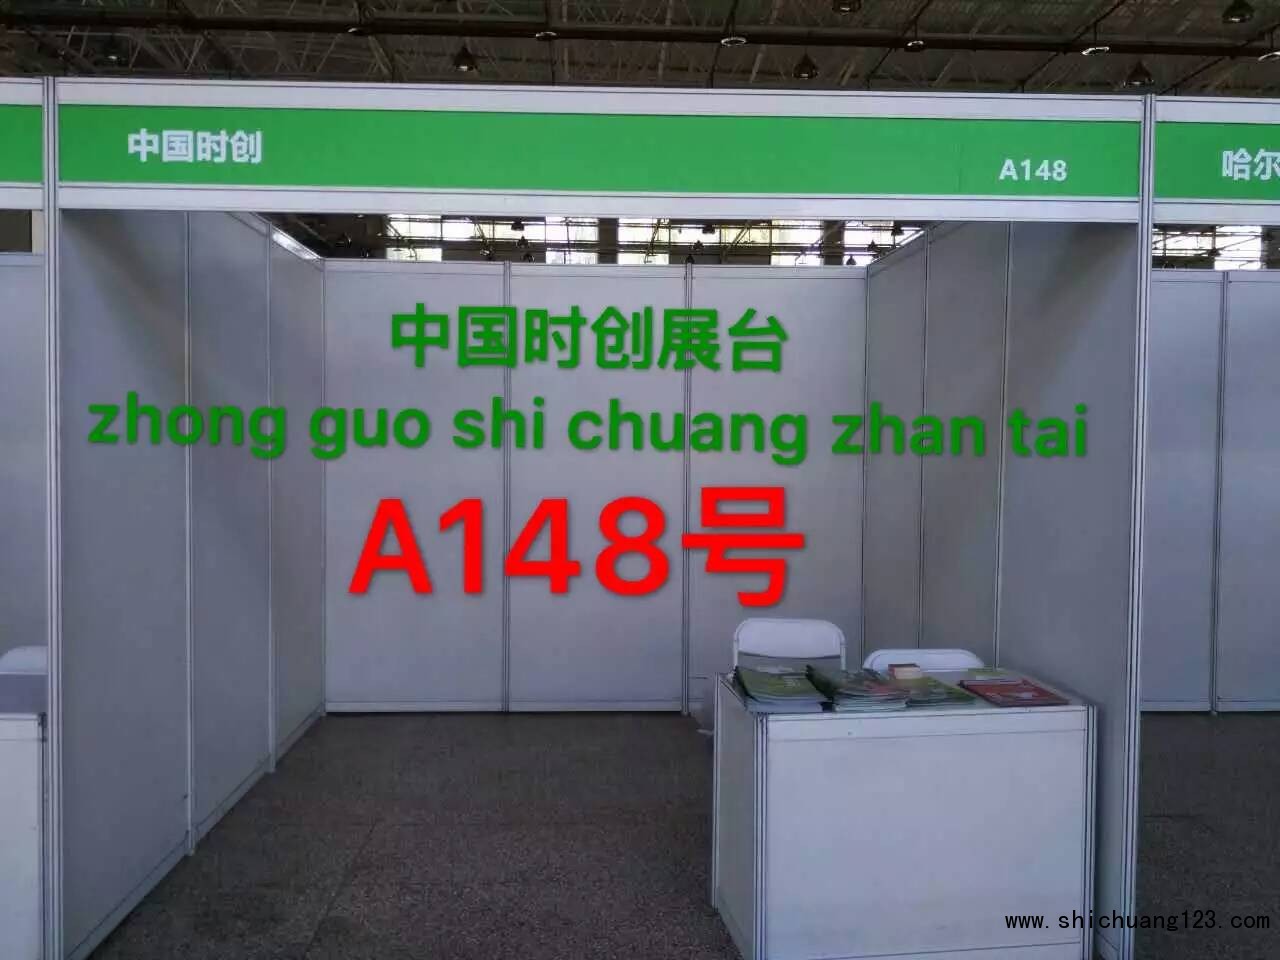 中国必全展台号A148号